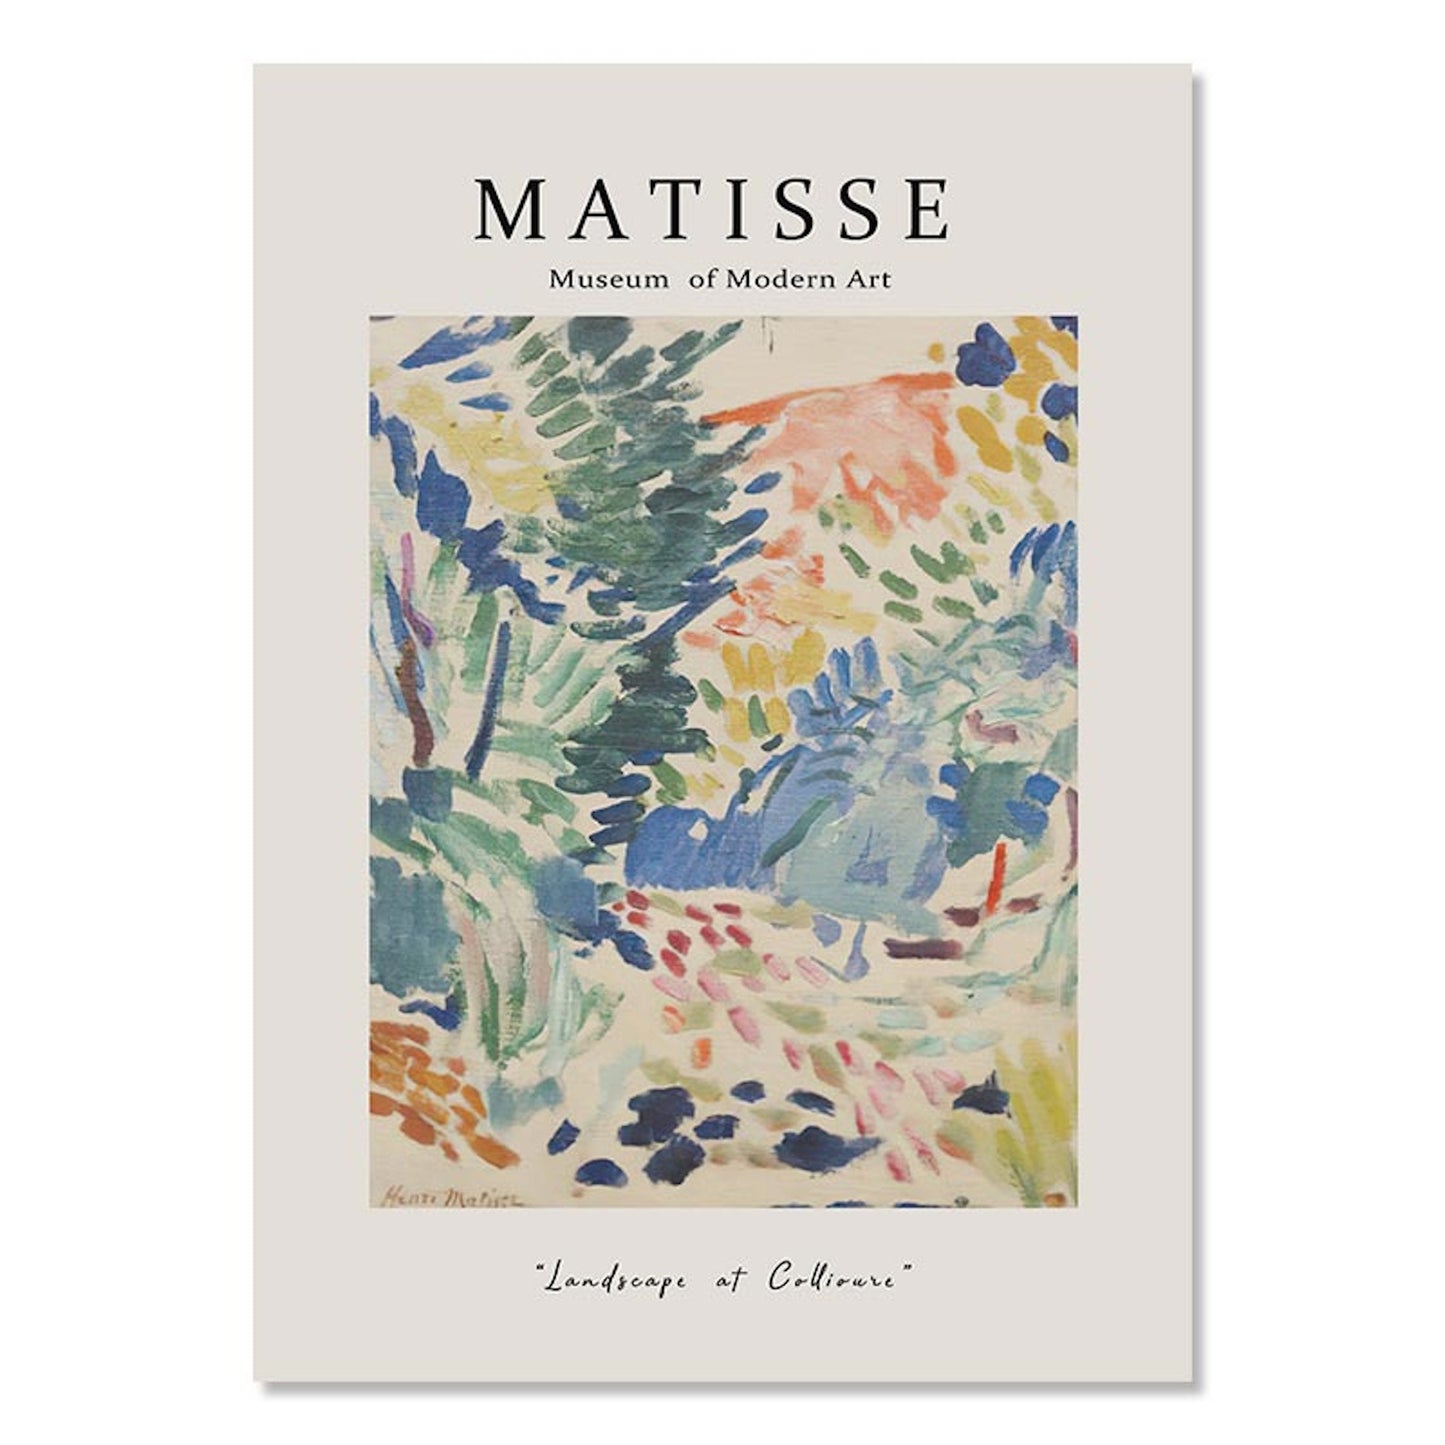 Poster Blumen Van Gogh Henri Matisse Rousseau Museum | Bilder Wohnzimmer | Wandbilder Schlafzimmer | Deko Print ohne Rahmen | Bilder Set